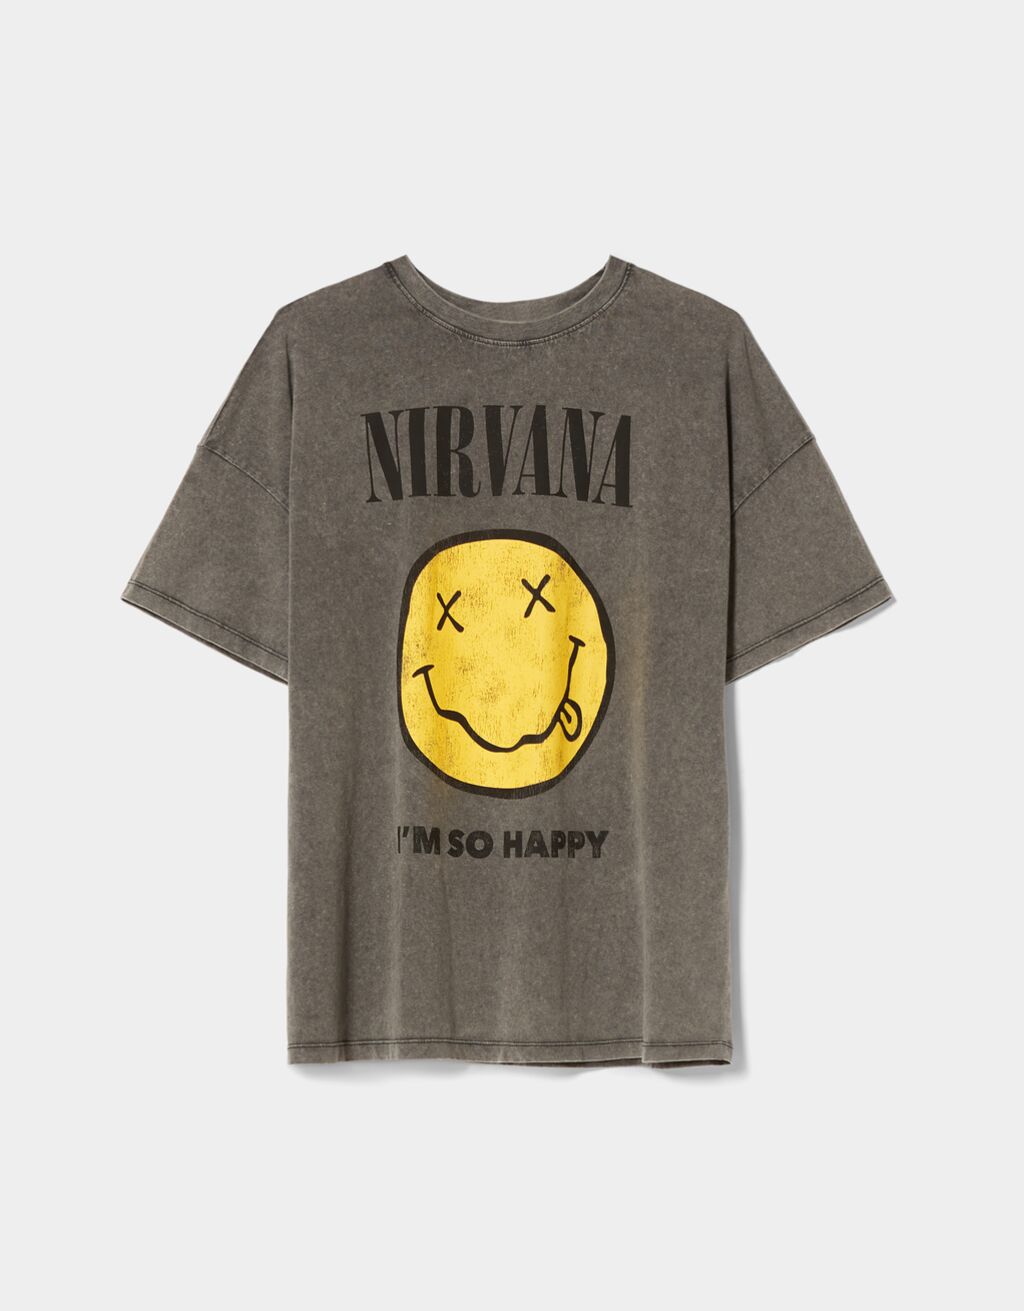 Tričko Nirvana s krátkými rukávy a potiskem happy face